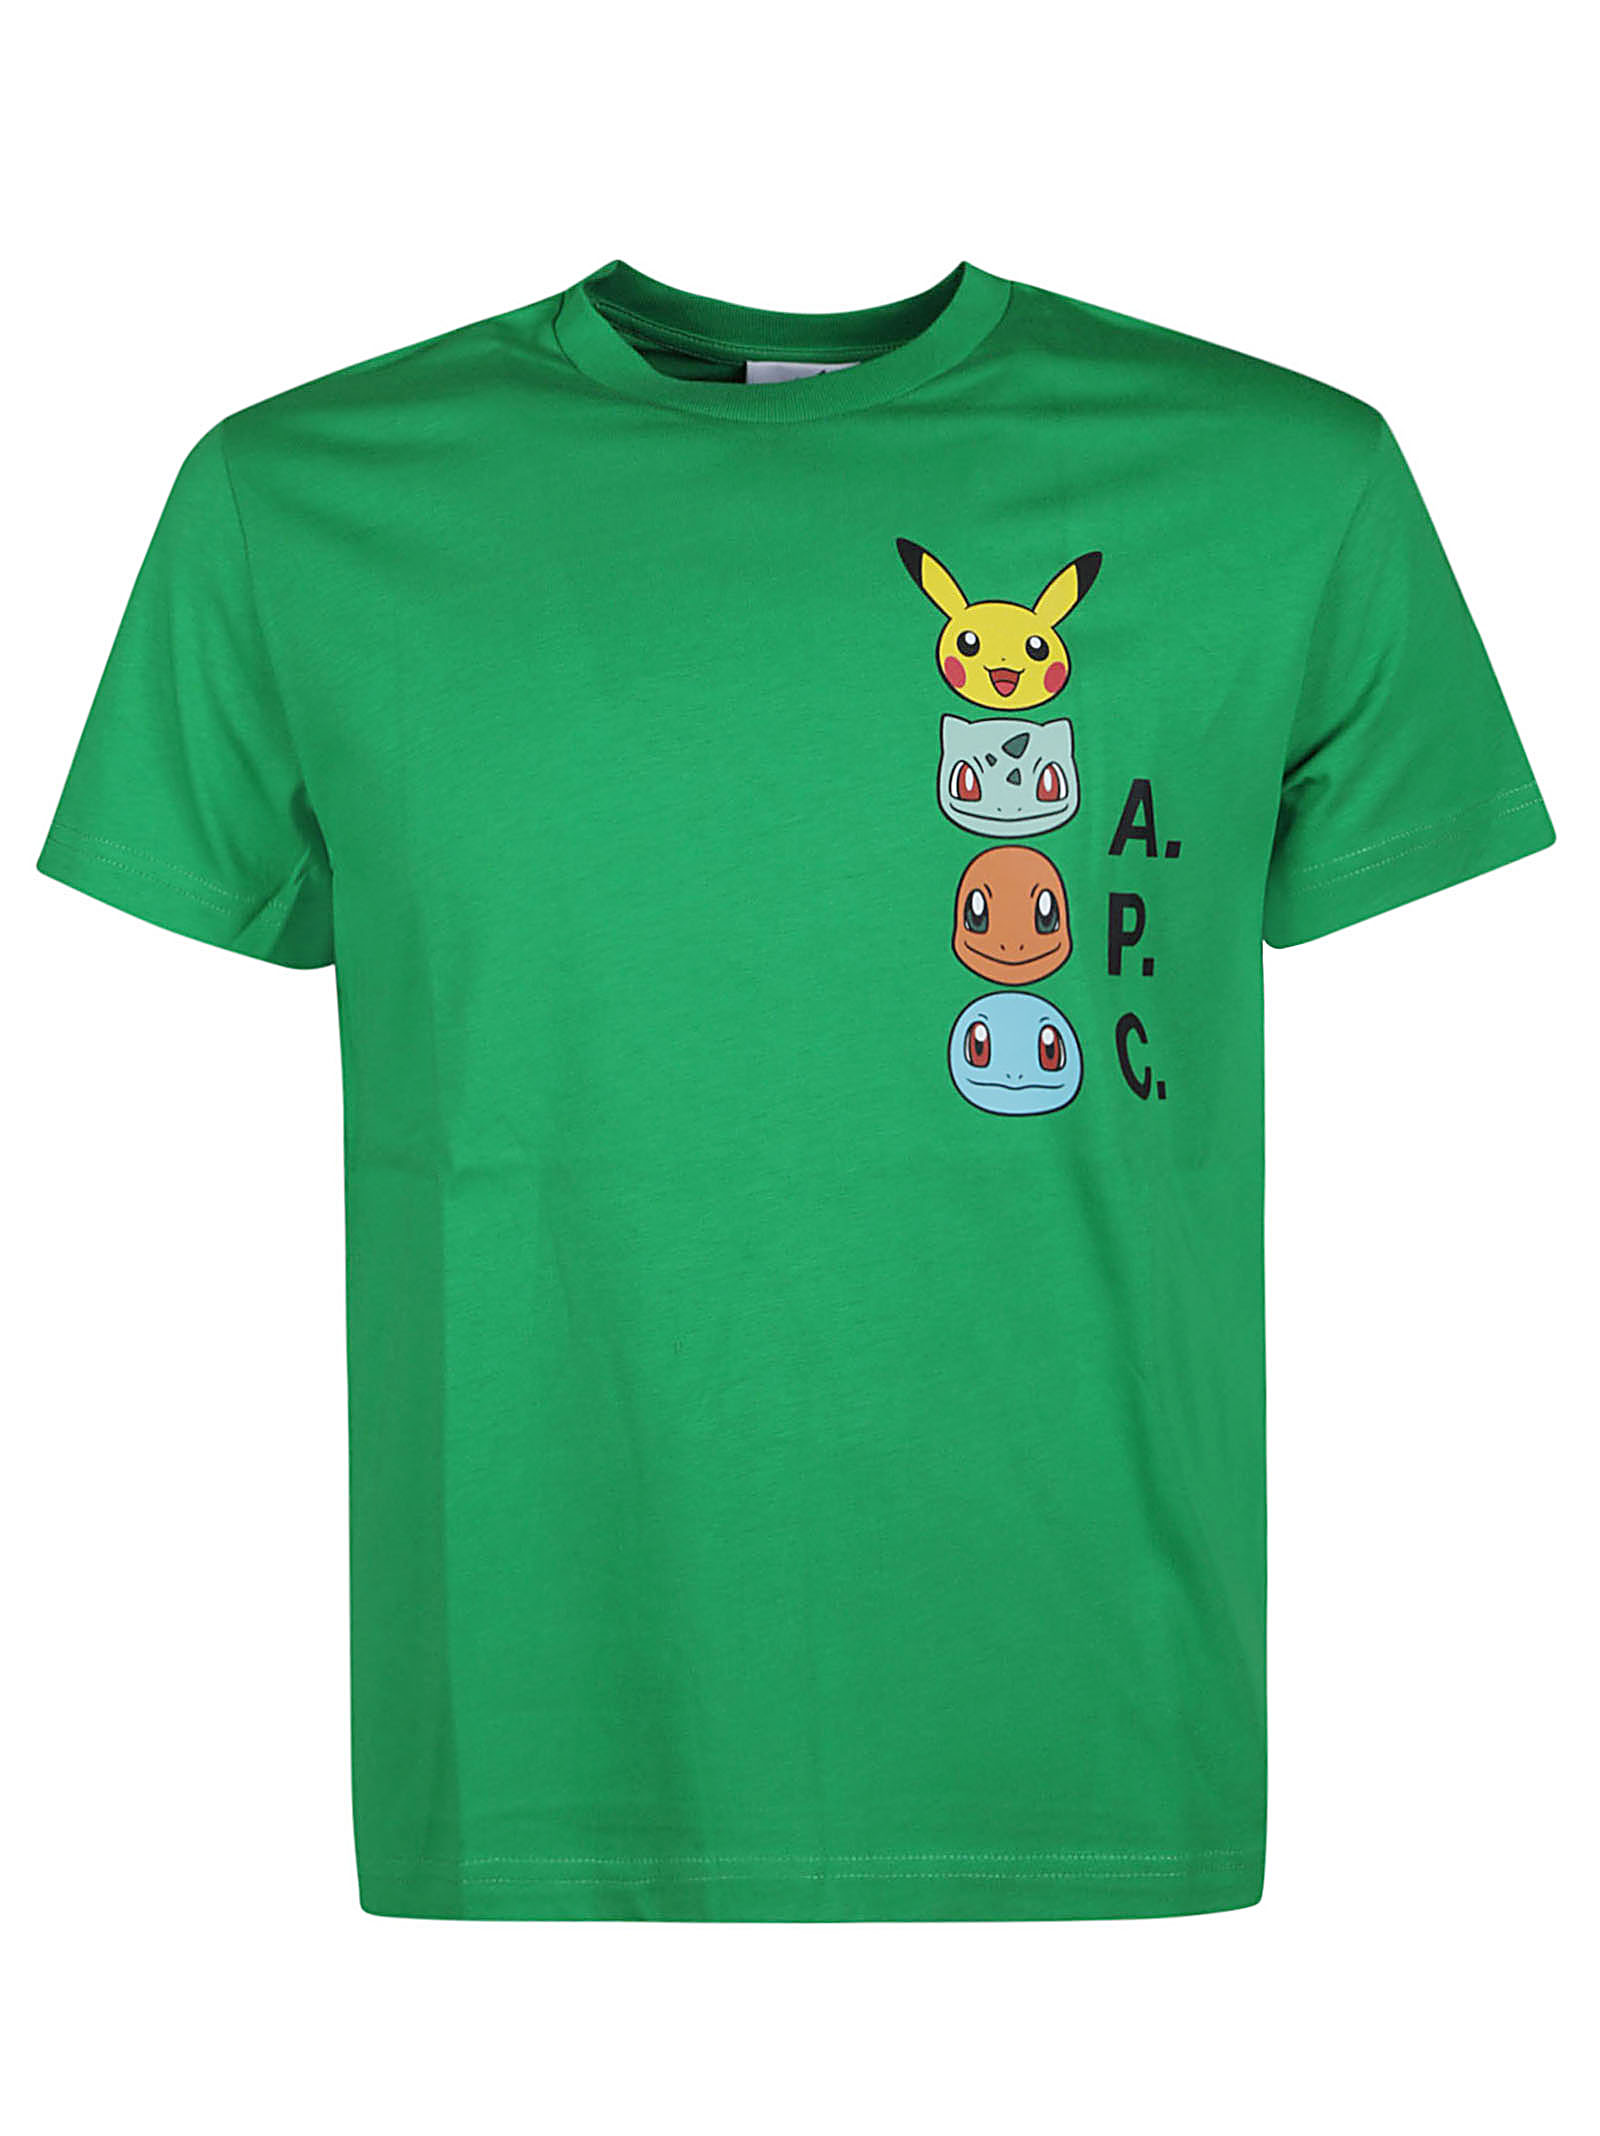 Apc Pokémon Portrait T-shirt In Vert